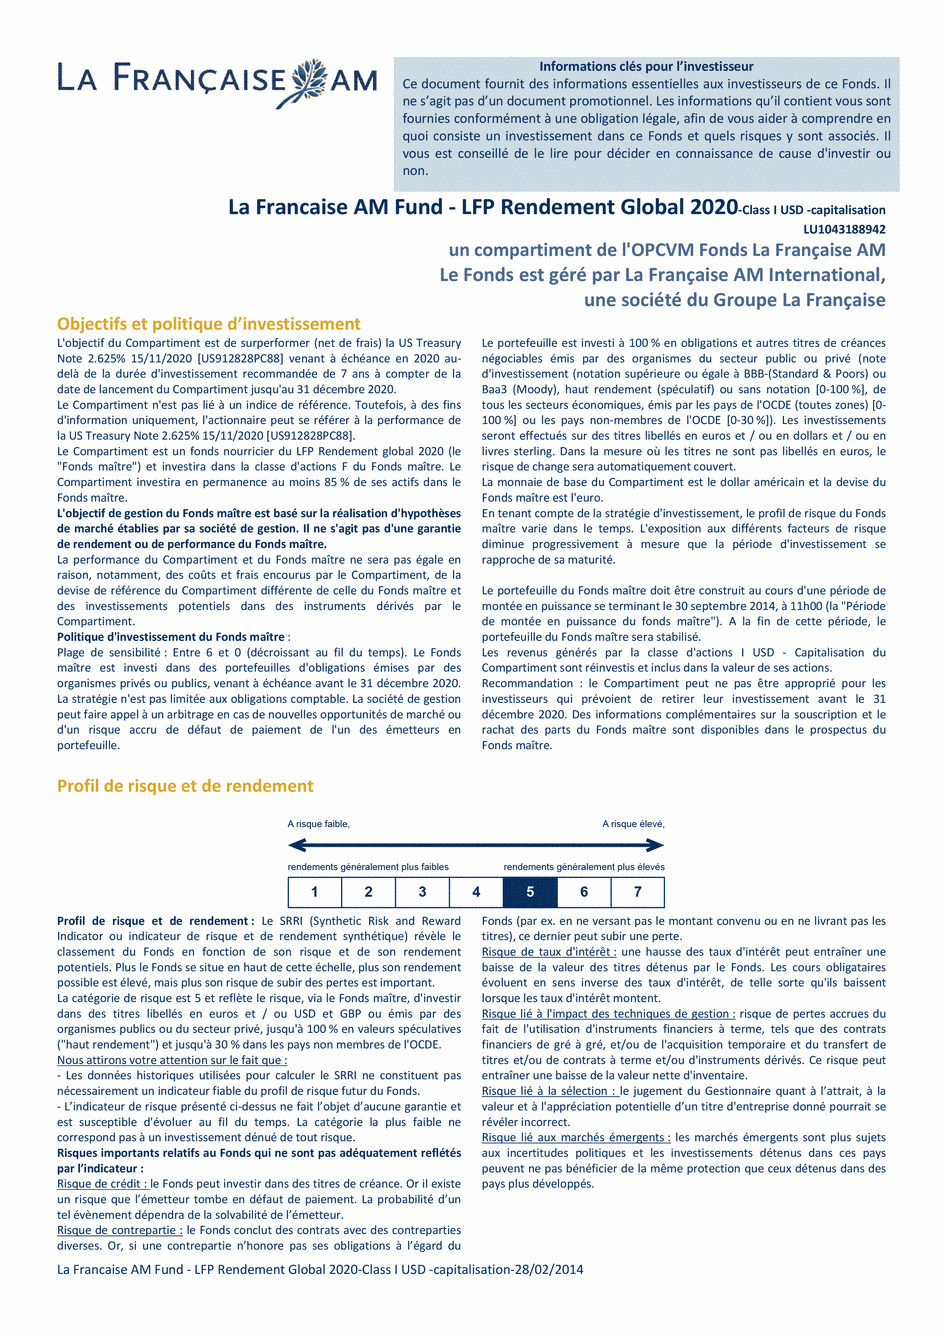 DICI La Française LUX - Rendement Global 2020 USD - I (C) USD - 28/02/2014 - Français